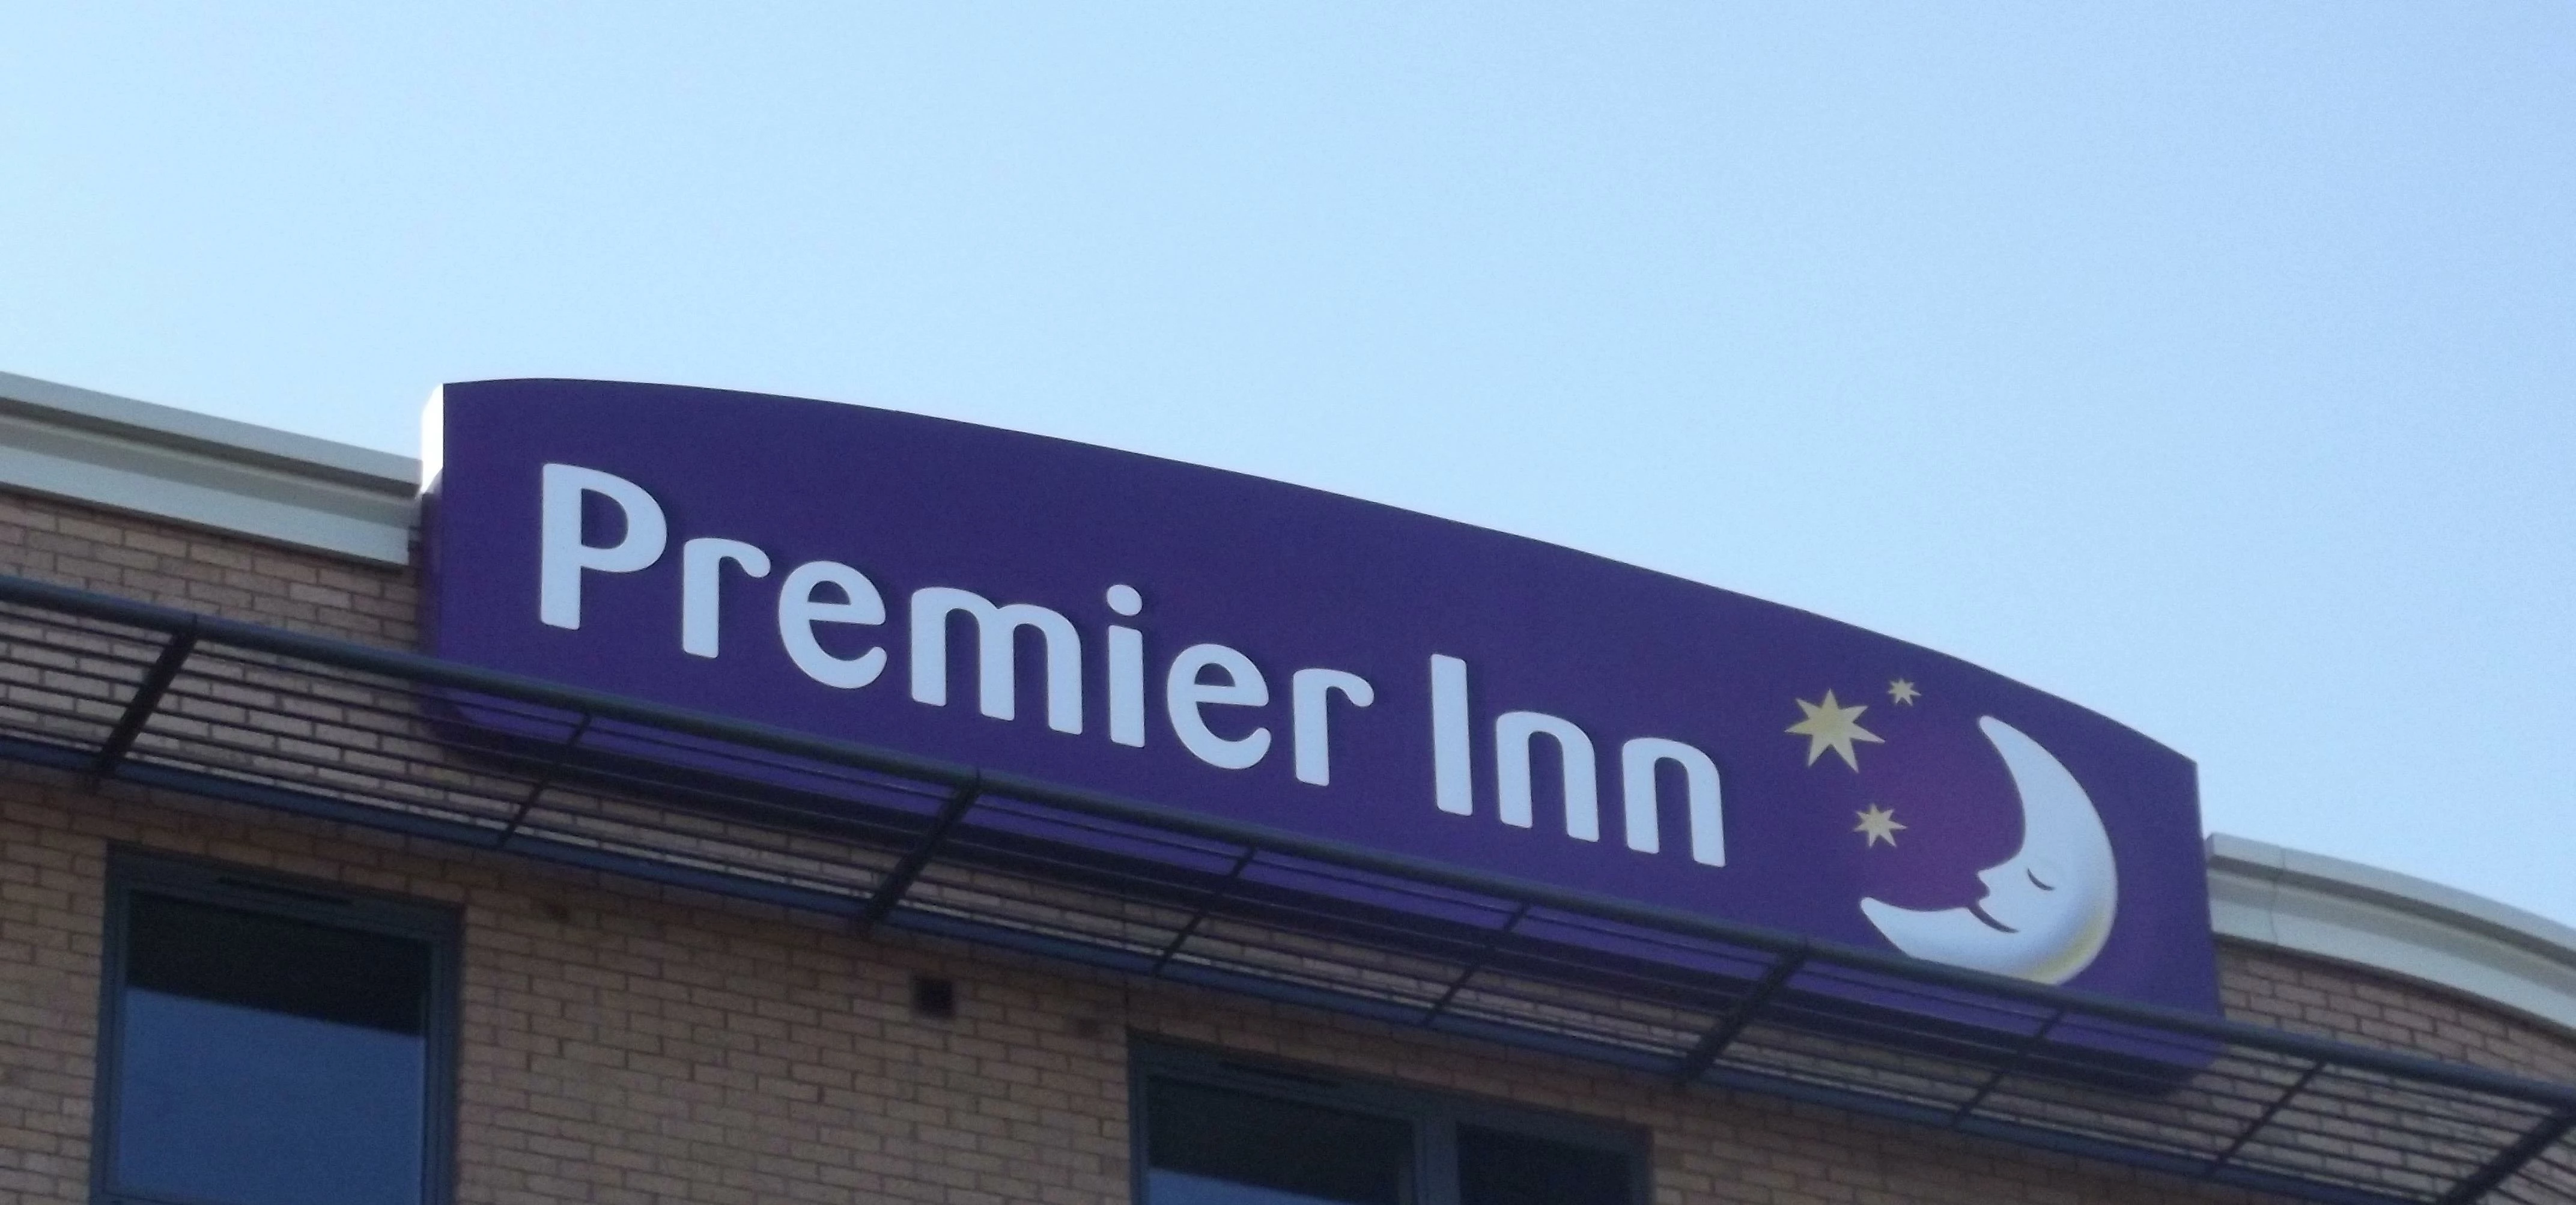 Premier Inn - Solihull - sign